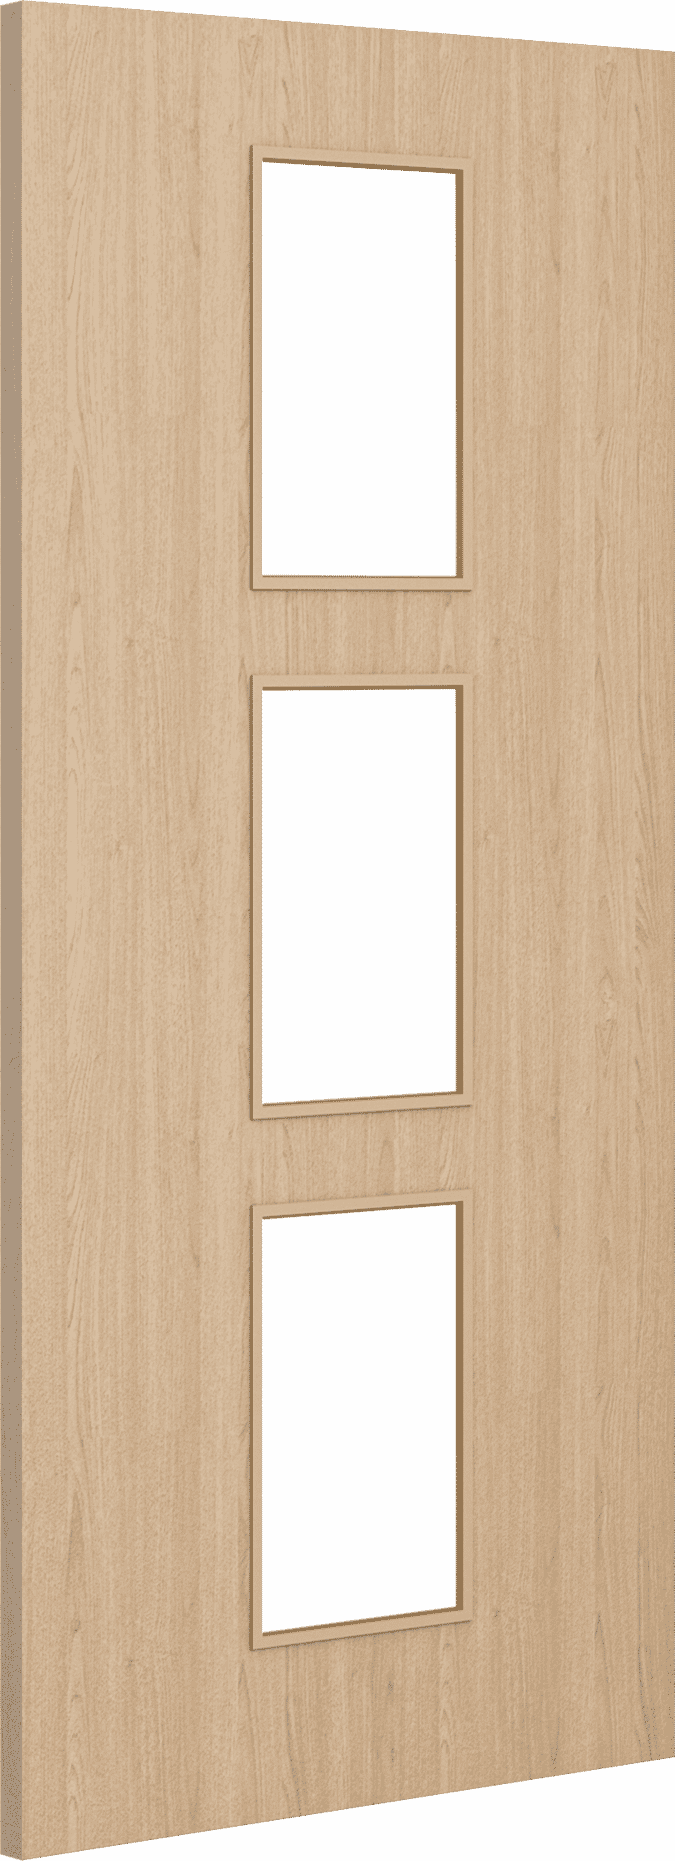 1981mm x 533mm x 44mm (21") Architectural Oak 11 Clear Glazed - Prefinished FD30 Fire Door Blank